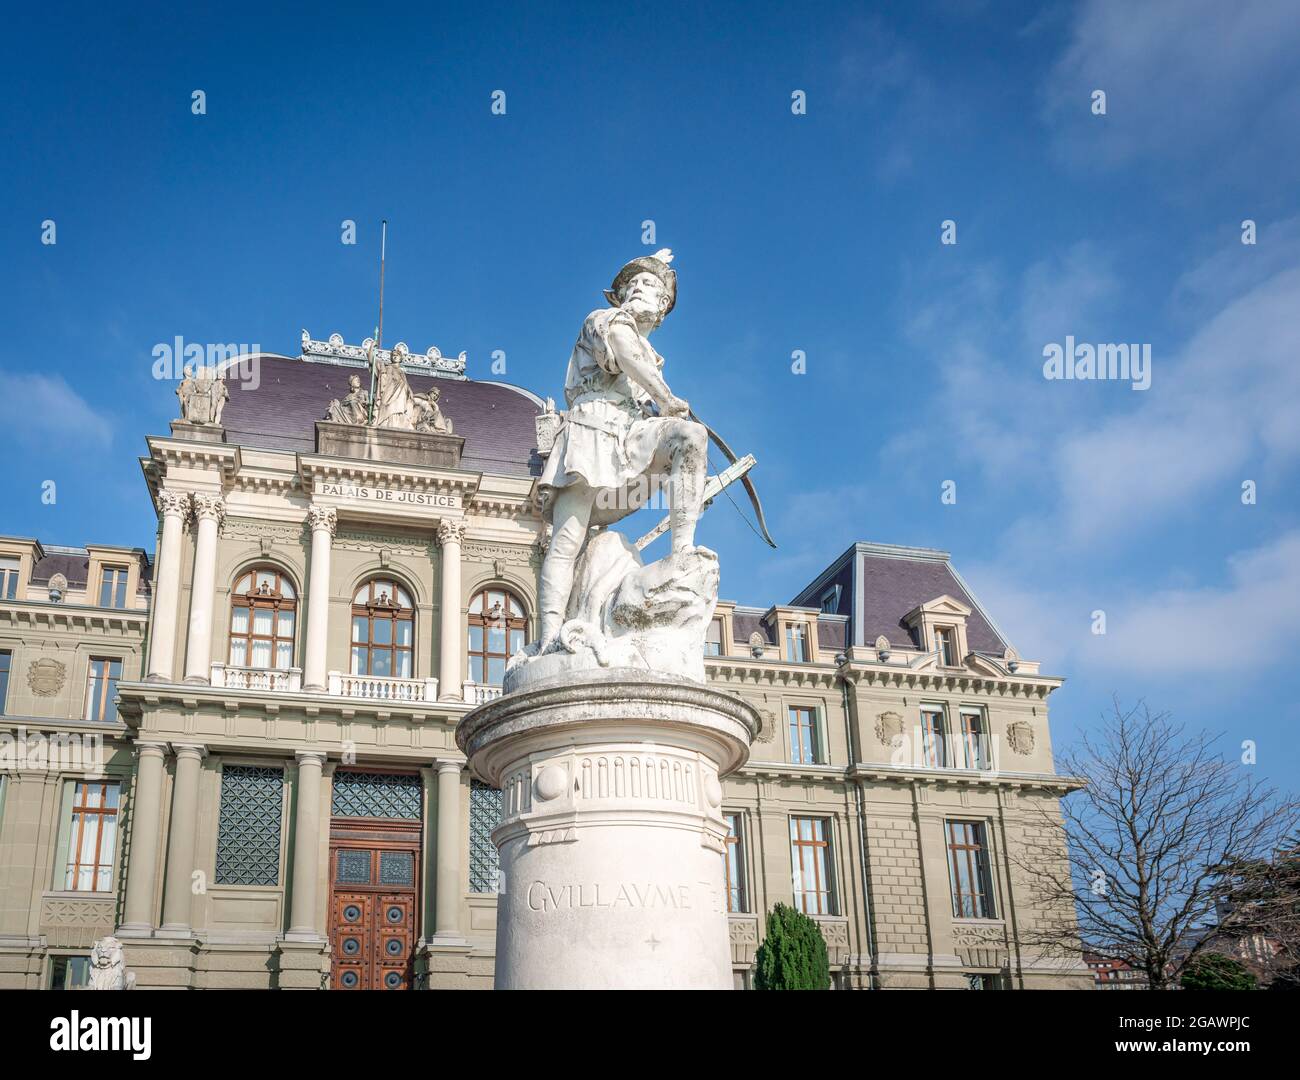 Statue de William Tell en face du Palais de Justice - Lausanne, Suisse Banque D'Images